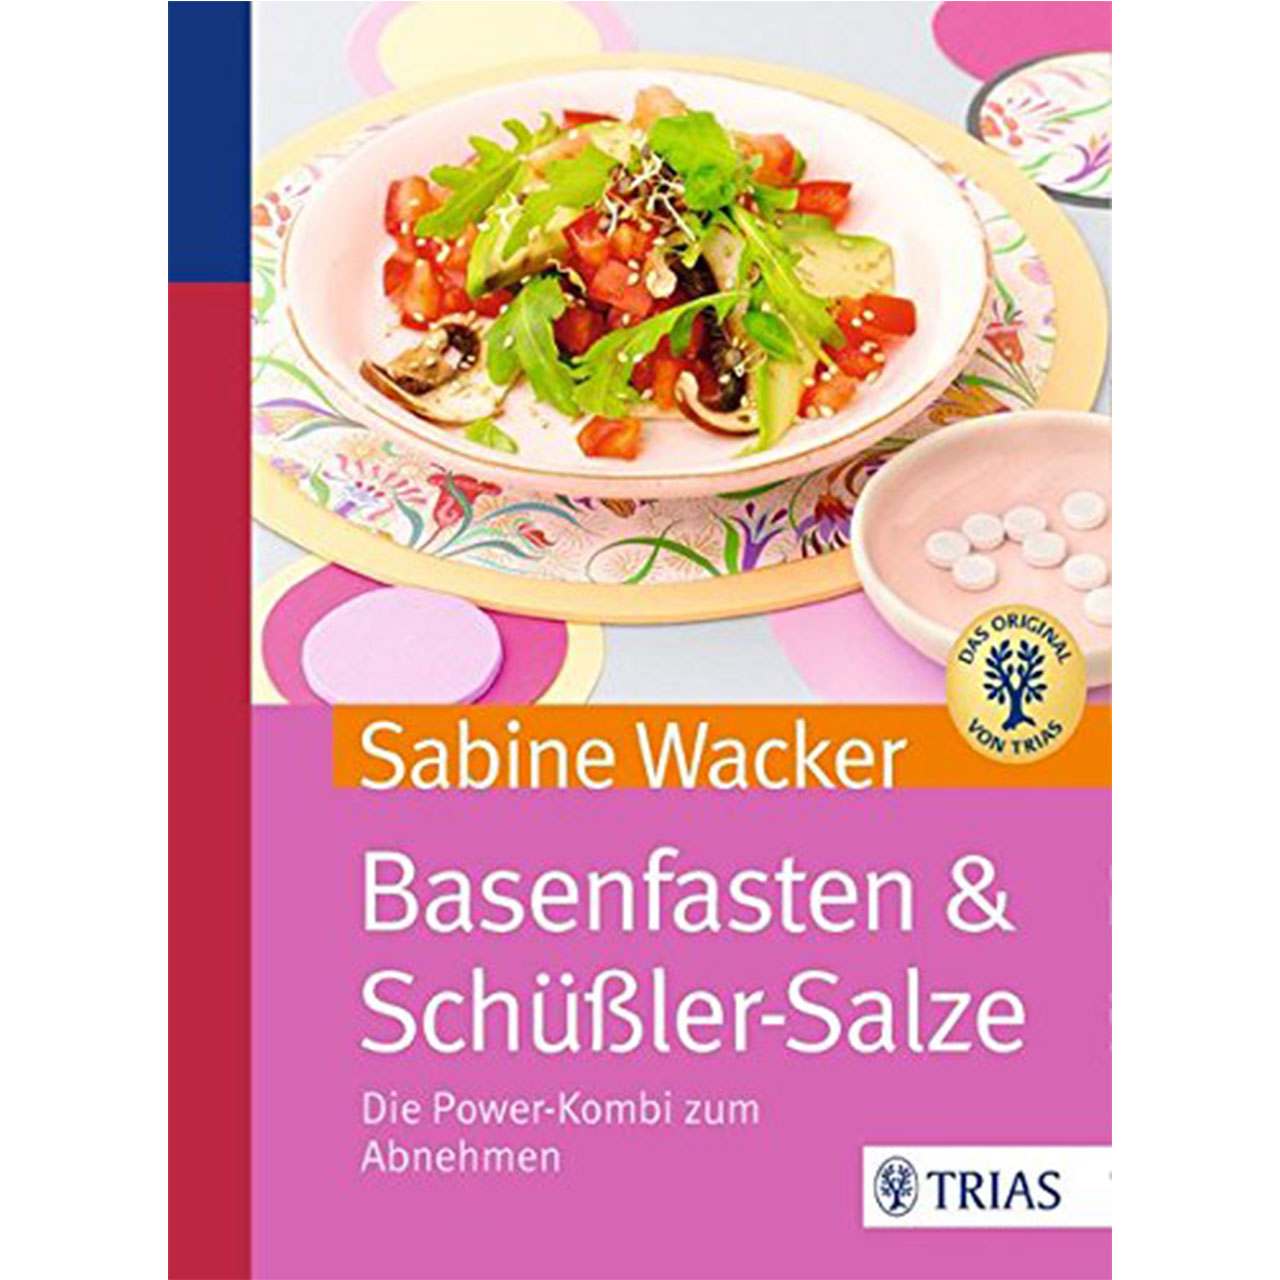 basenfasten & Schüßler-Salze von Sabine Wacker, TRIAS-Verlag